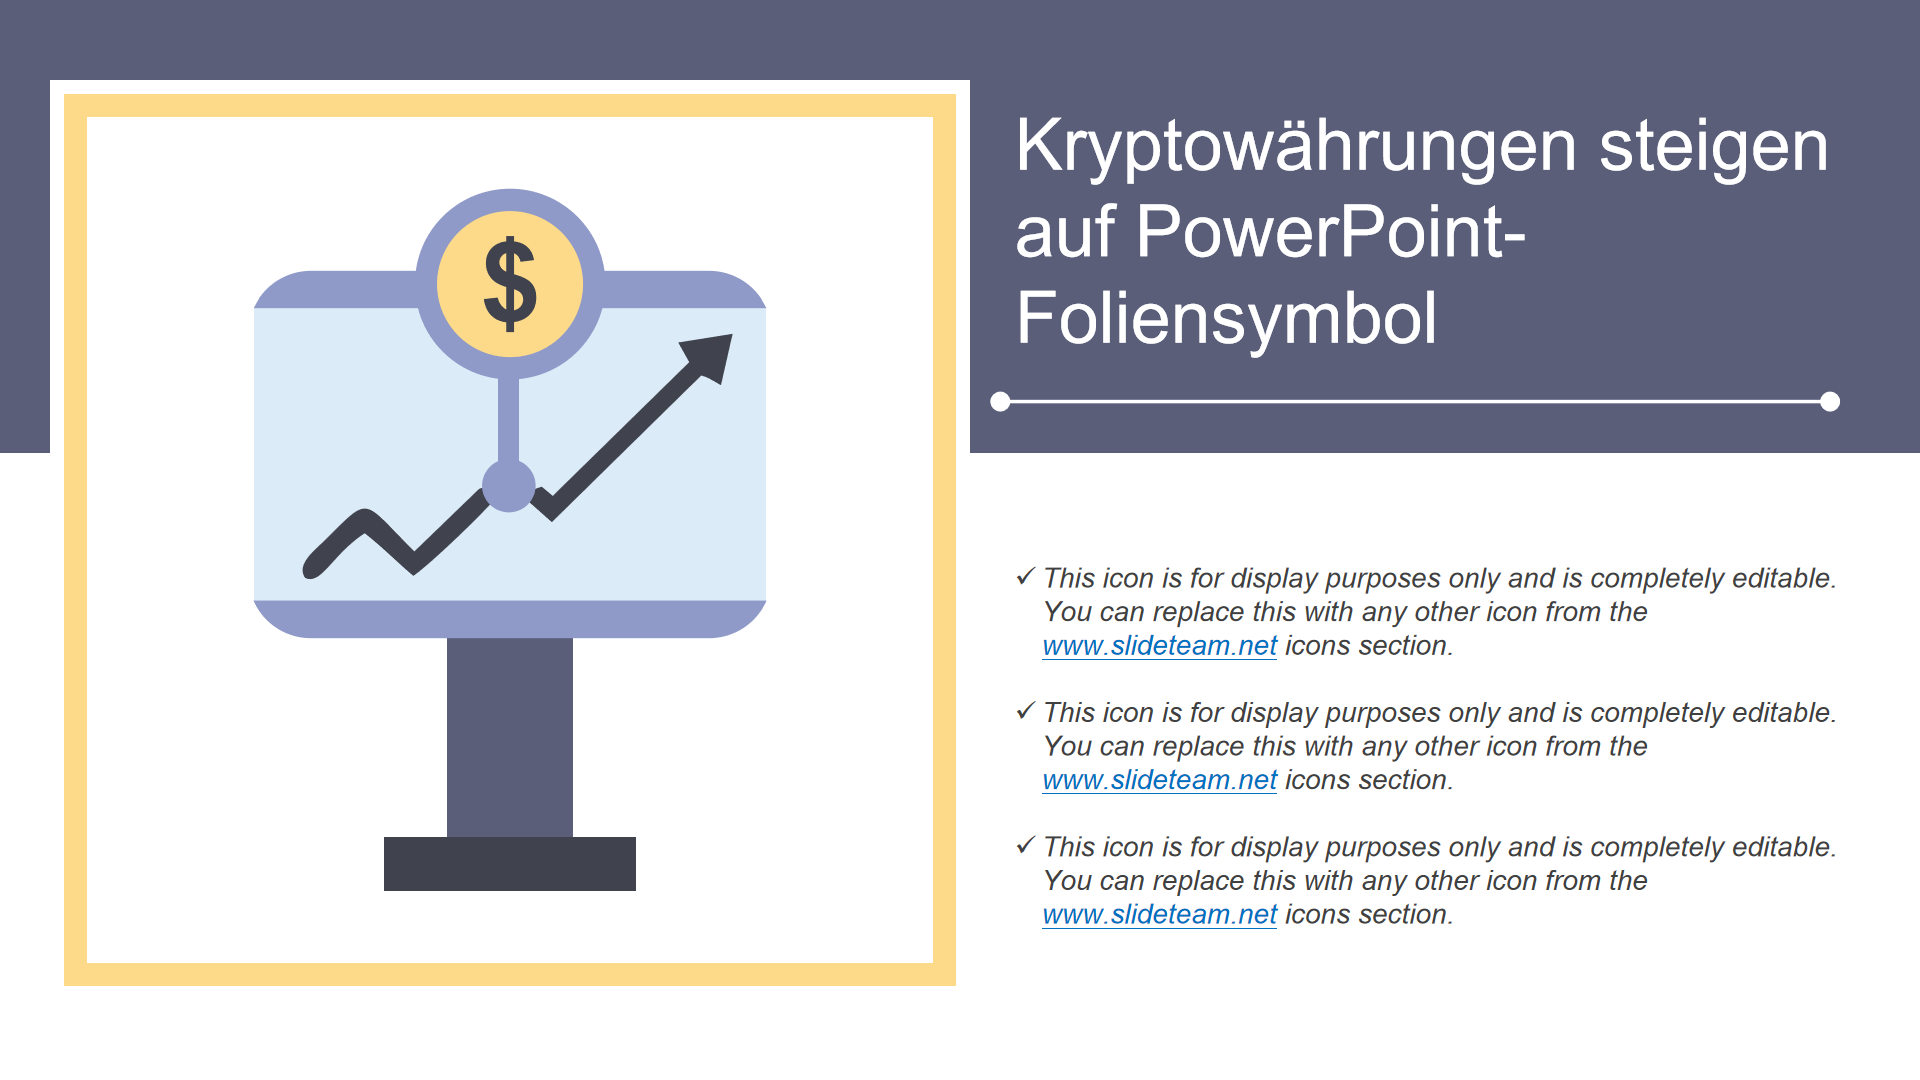 Kryptowährungen steigen auf PowerPoint-Foliensymbol